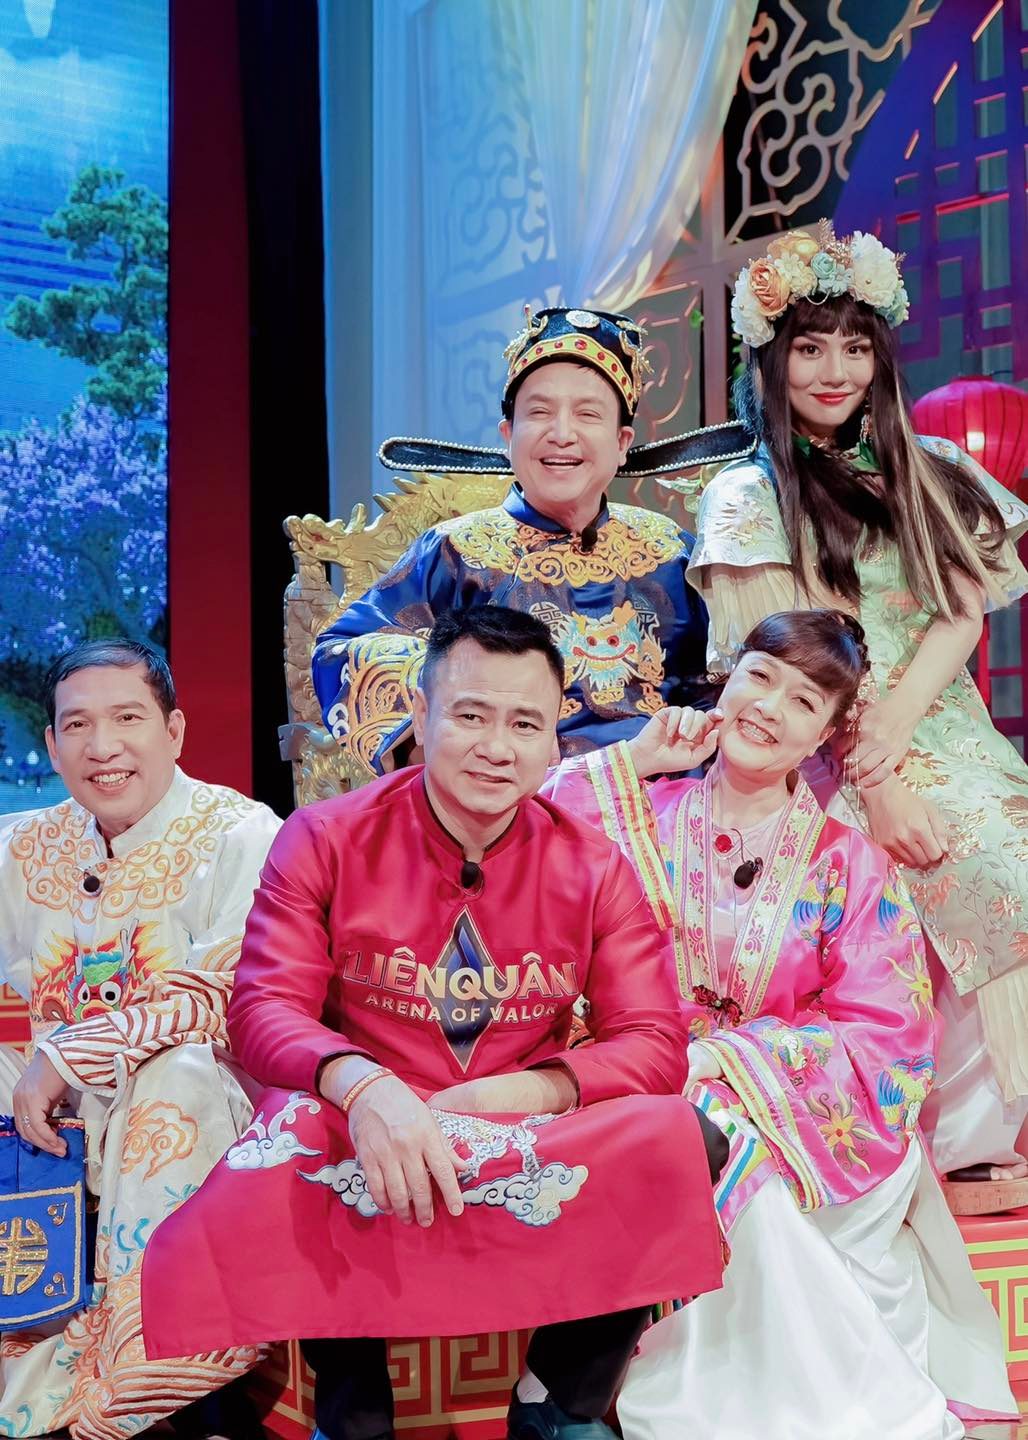 Dàn nghệ sĩ kỳ cựu như Chí Trung, Tự Long, Quang Thắng cũng xuất hiện trong bài đăng của diễn viên Duy Khánh